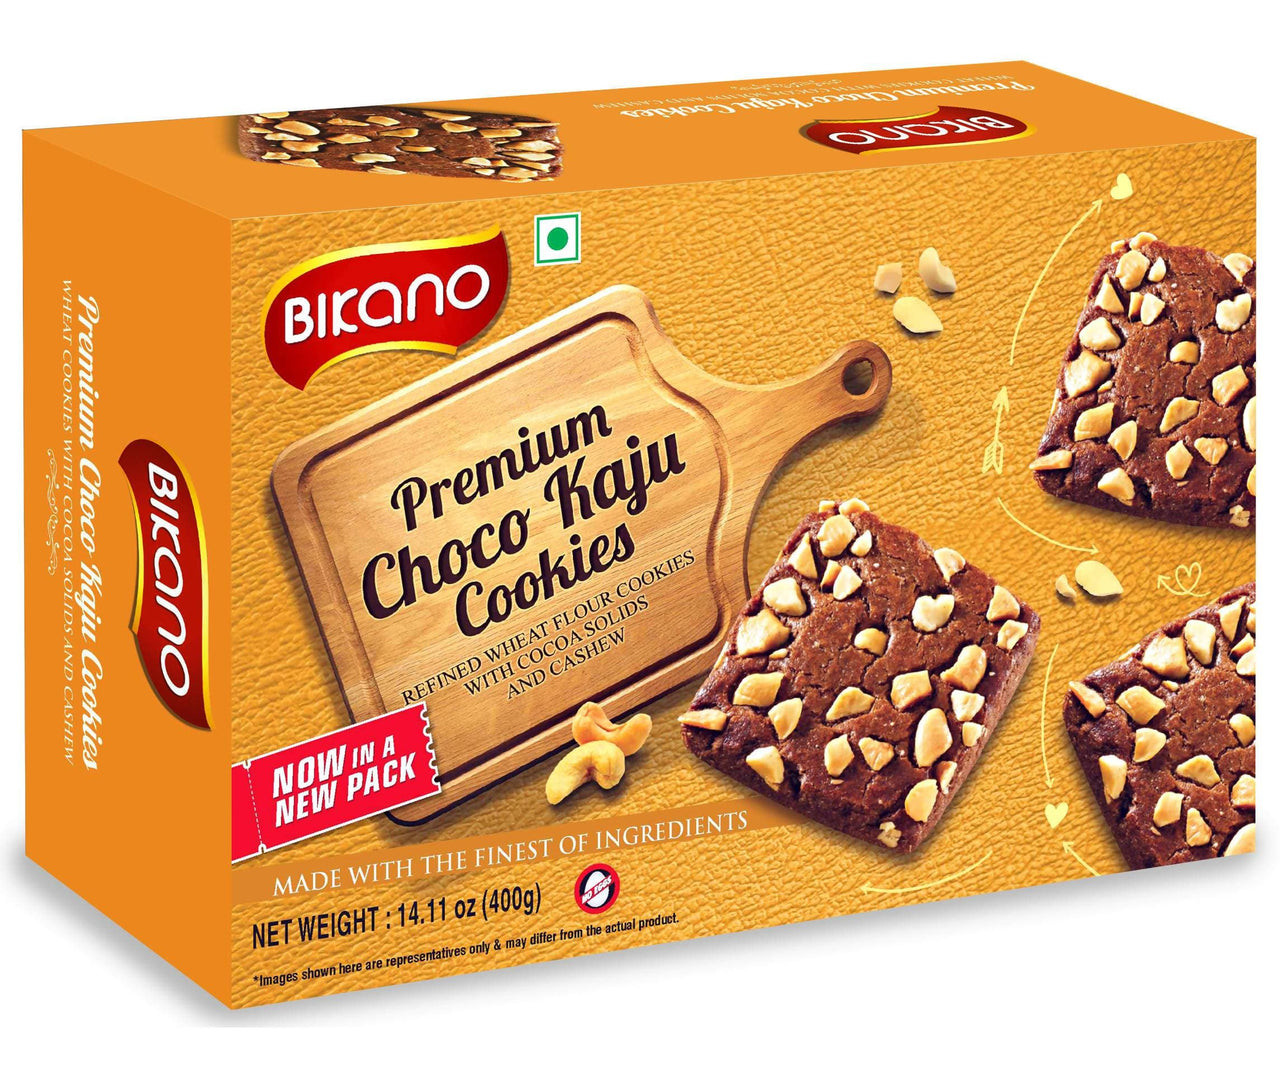 Bikano Premium Kaju Chocolate Cookies